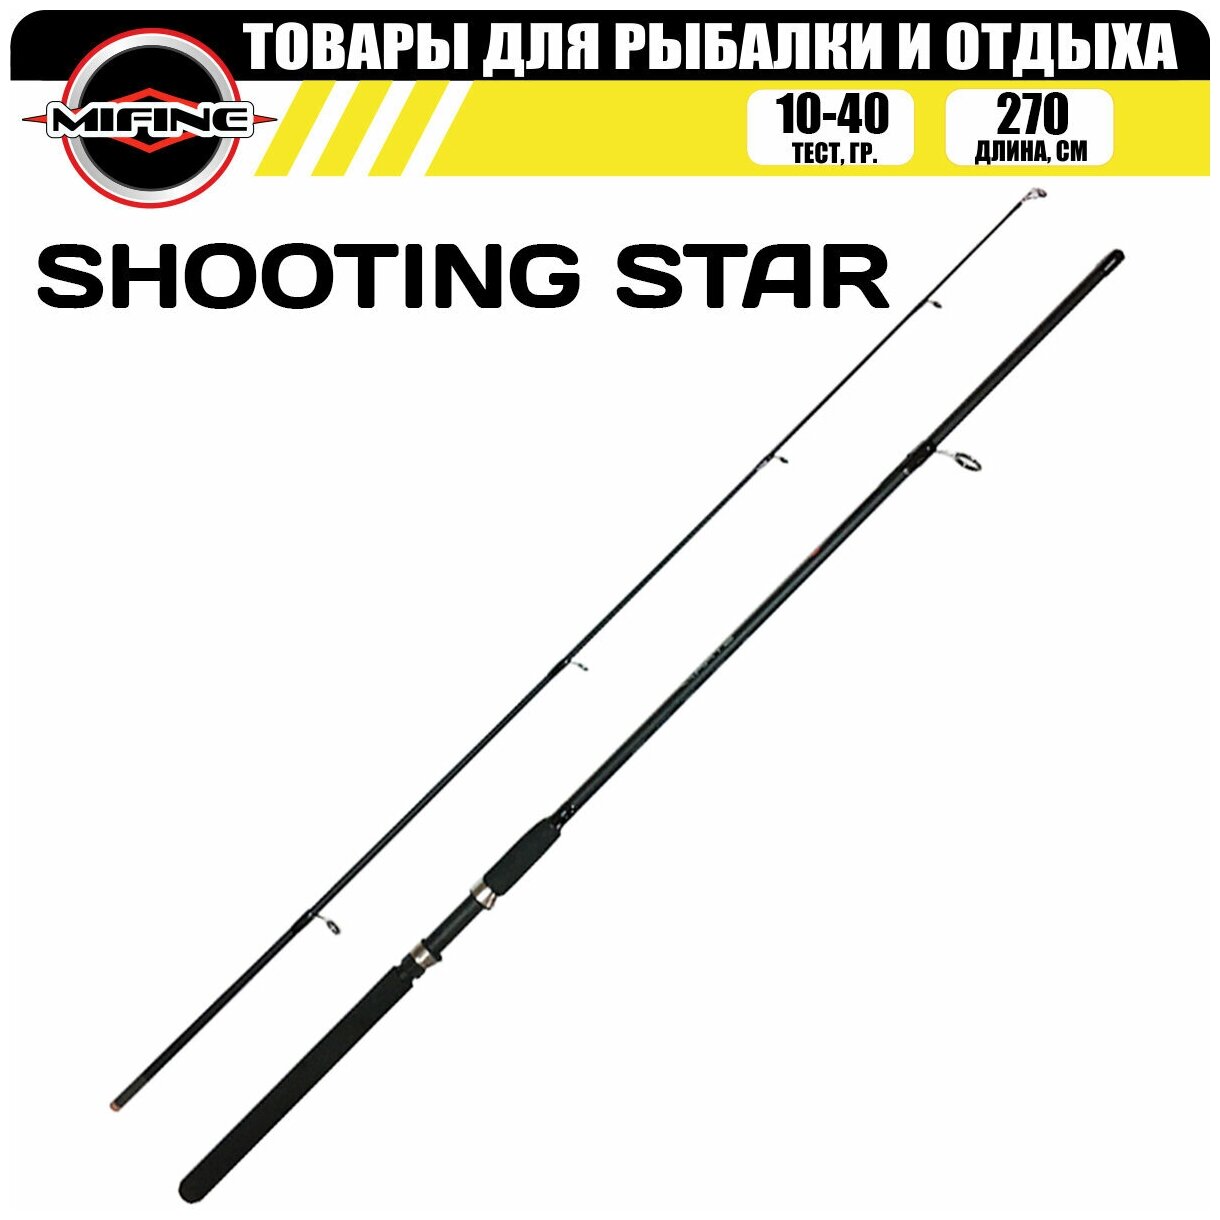 Спиннинг штекерный MIFINE SHOOTING STAR SPIN 2.7м (10-40гр), для рыбалки, рыболовный